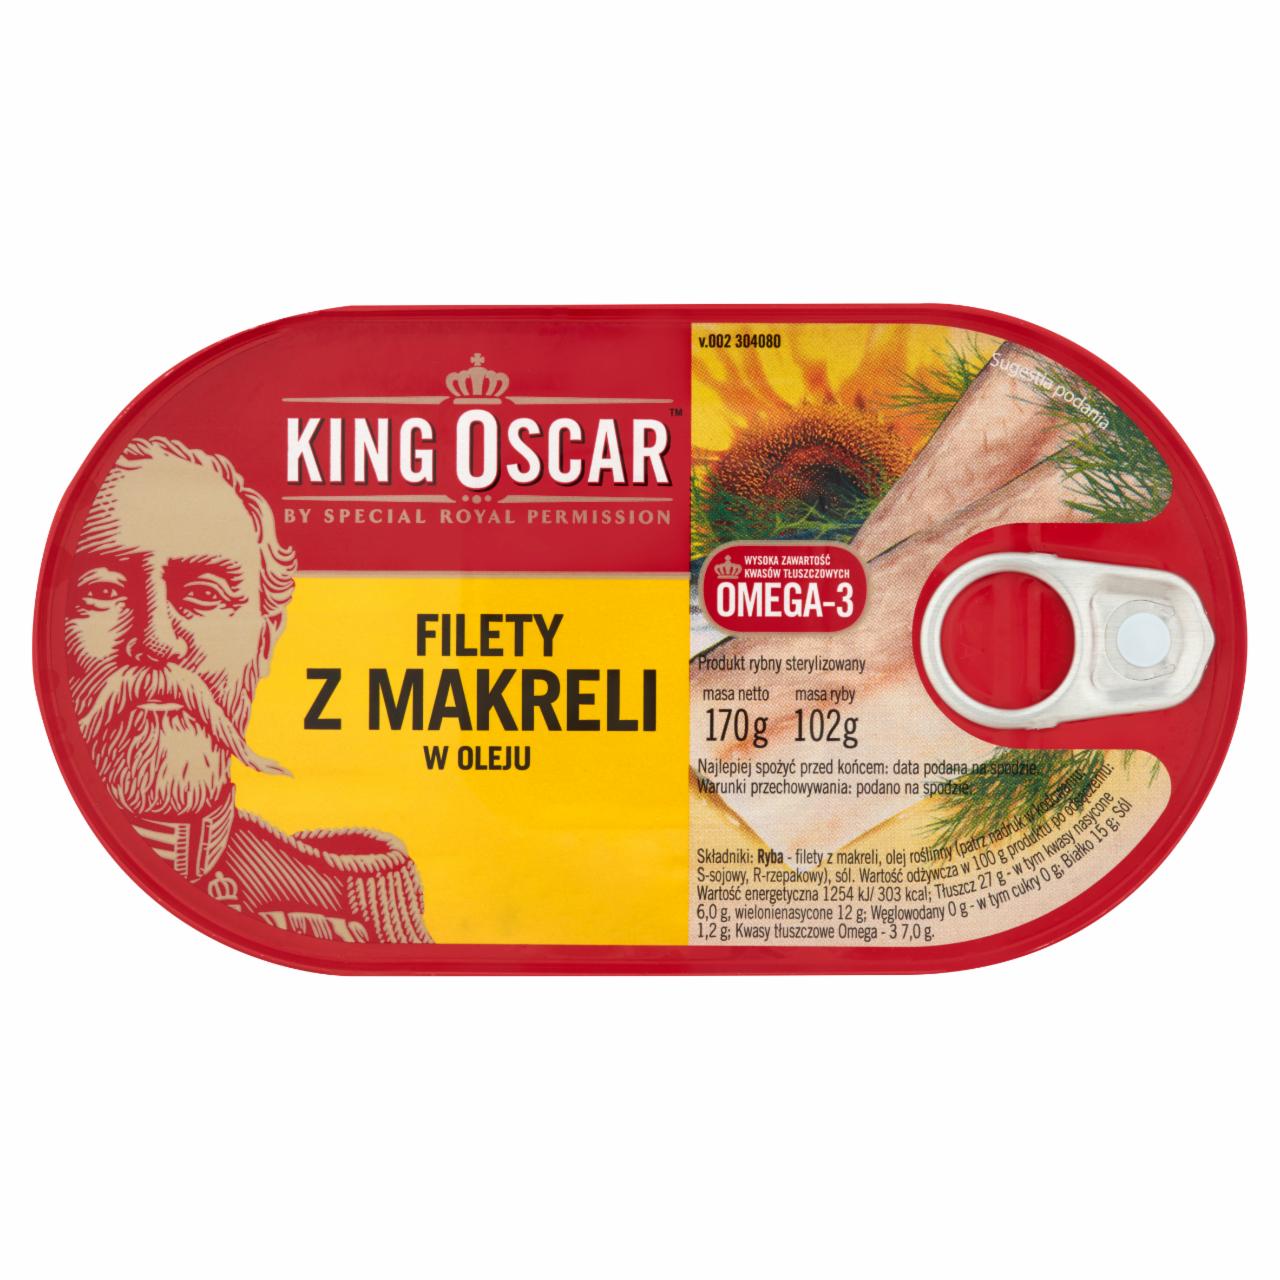 Zdjęcia - King Oscar Filety z makreli w oleju 170 g